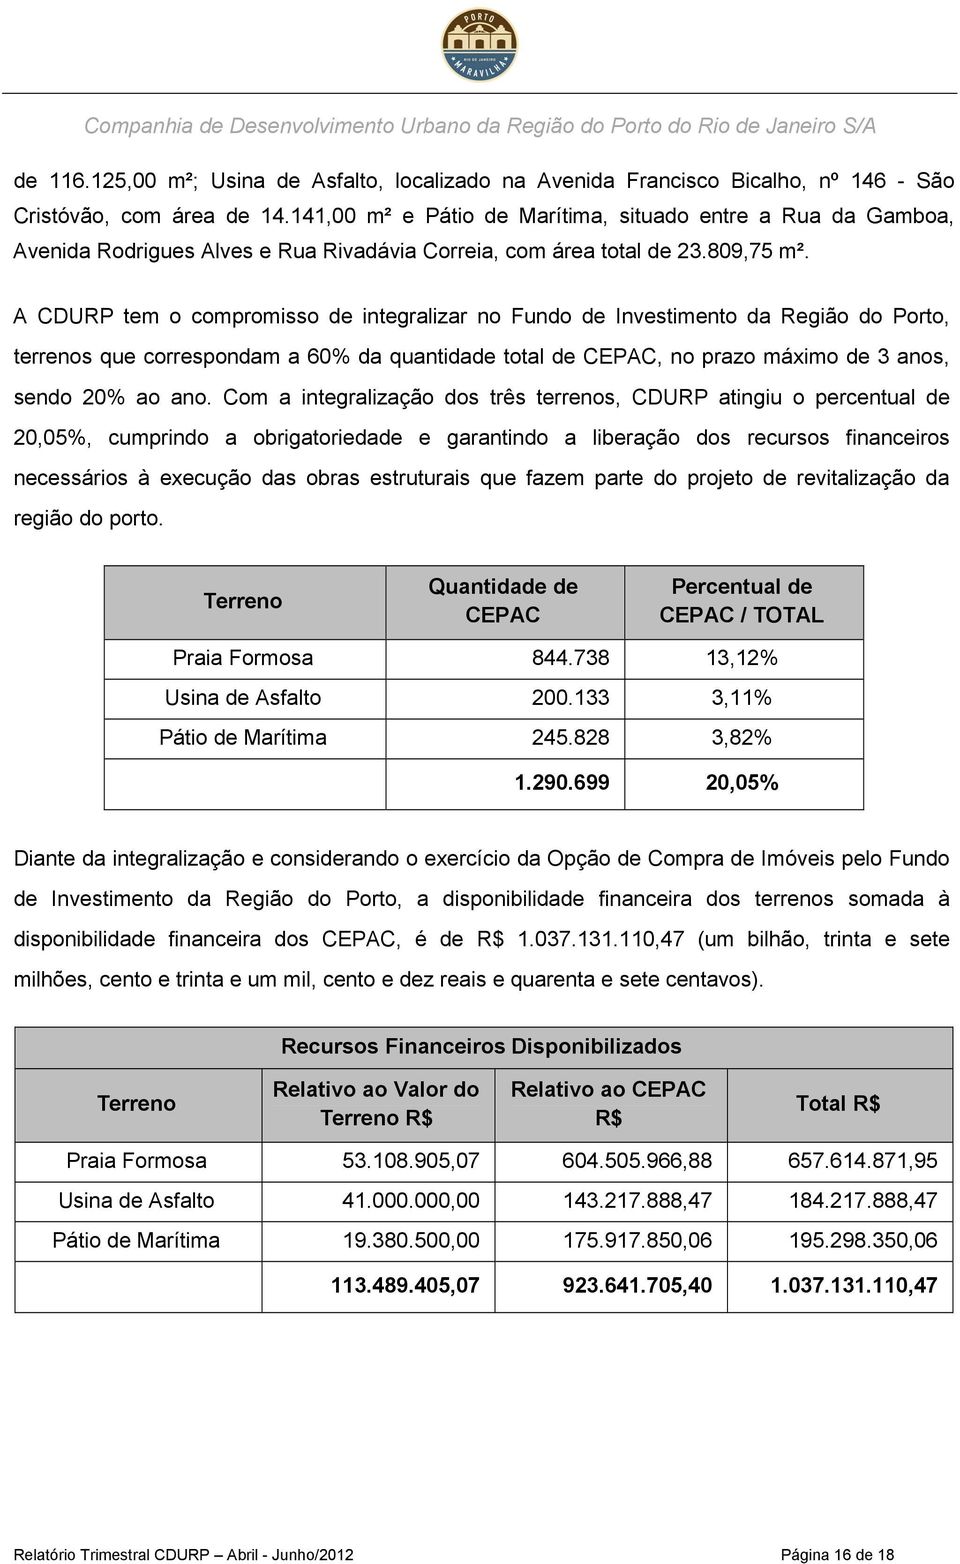 A CDURP tem o compromisso de integralizar no Fundo de Investimento da Região do Porto, terrenos que correspondam a 60% da quantidade total de CEPAC, no prazo máximo de 3 anos, sendo 20% ao ano.